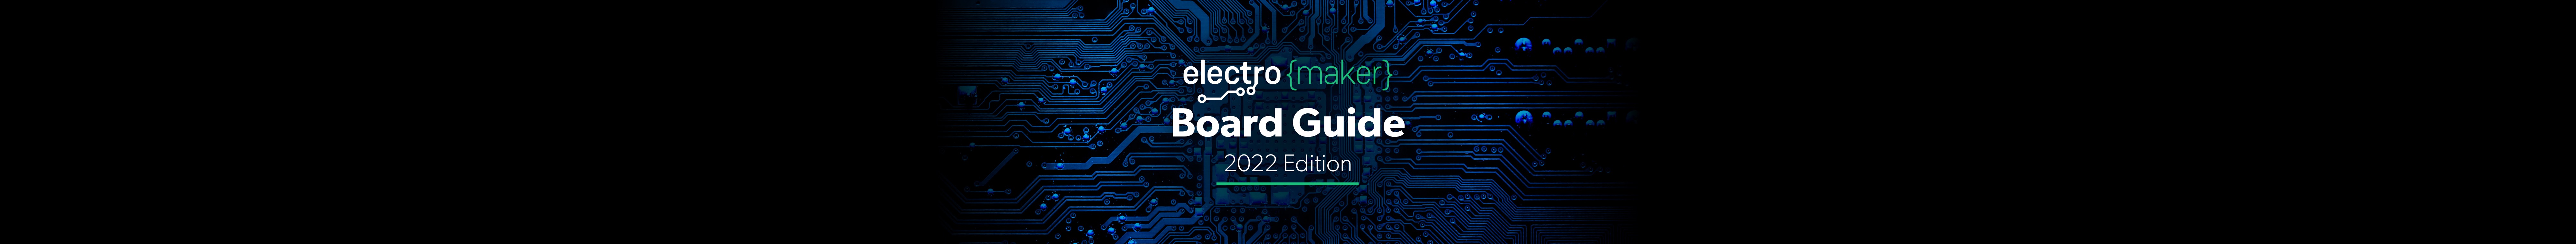 Electromaker Board Guide 2022